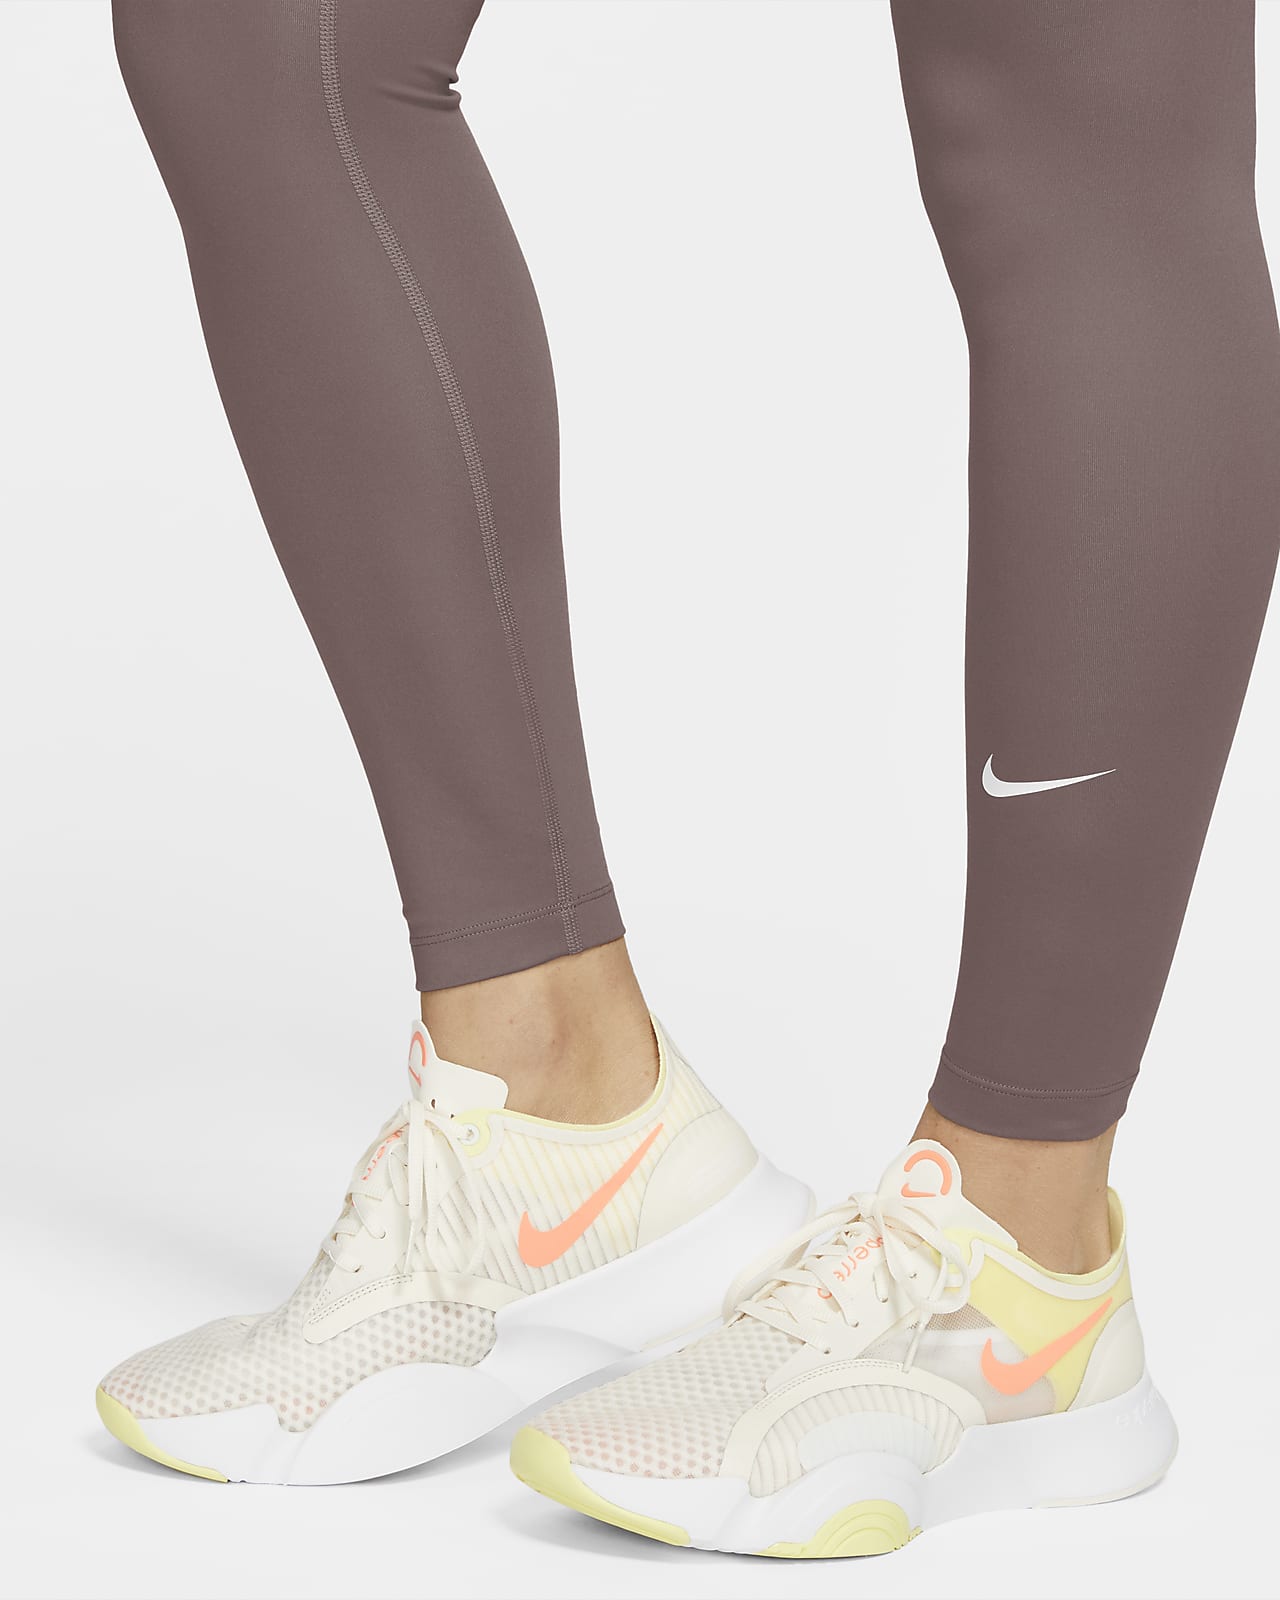 Nike One (M) Women's High-Waisted Leggings (Maternity). Nike LU